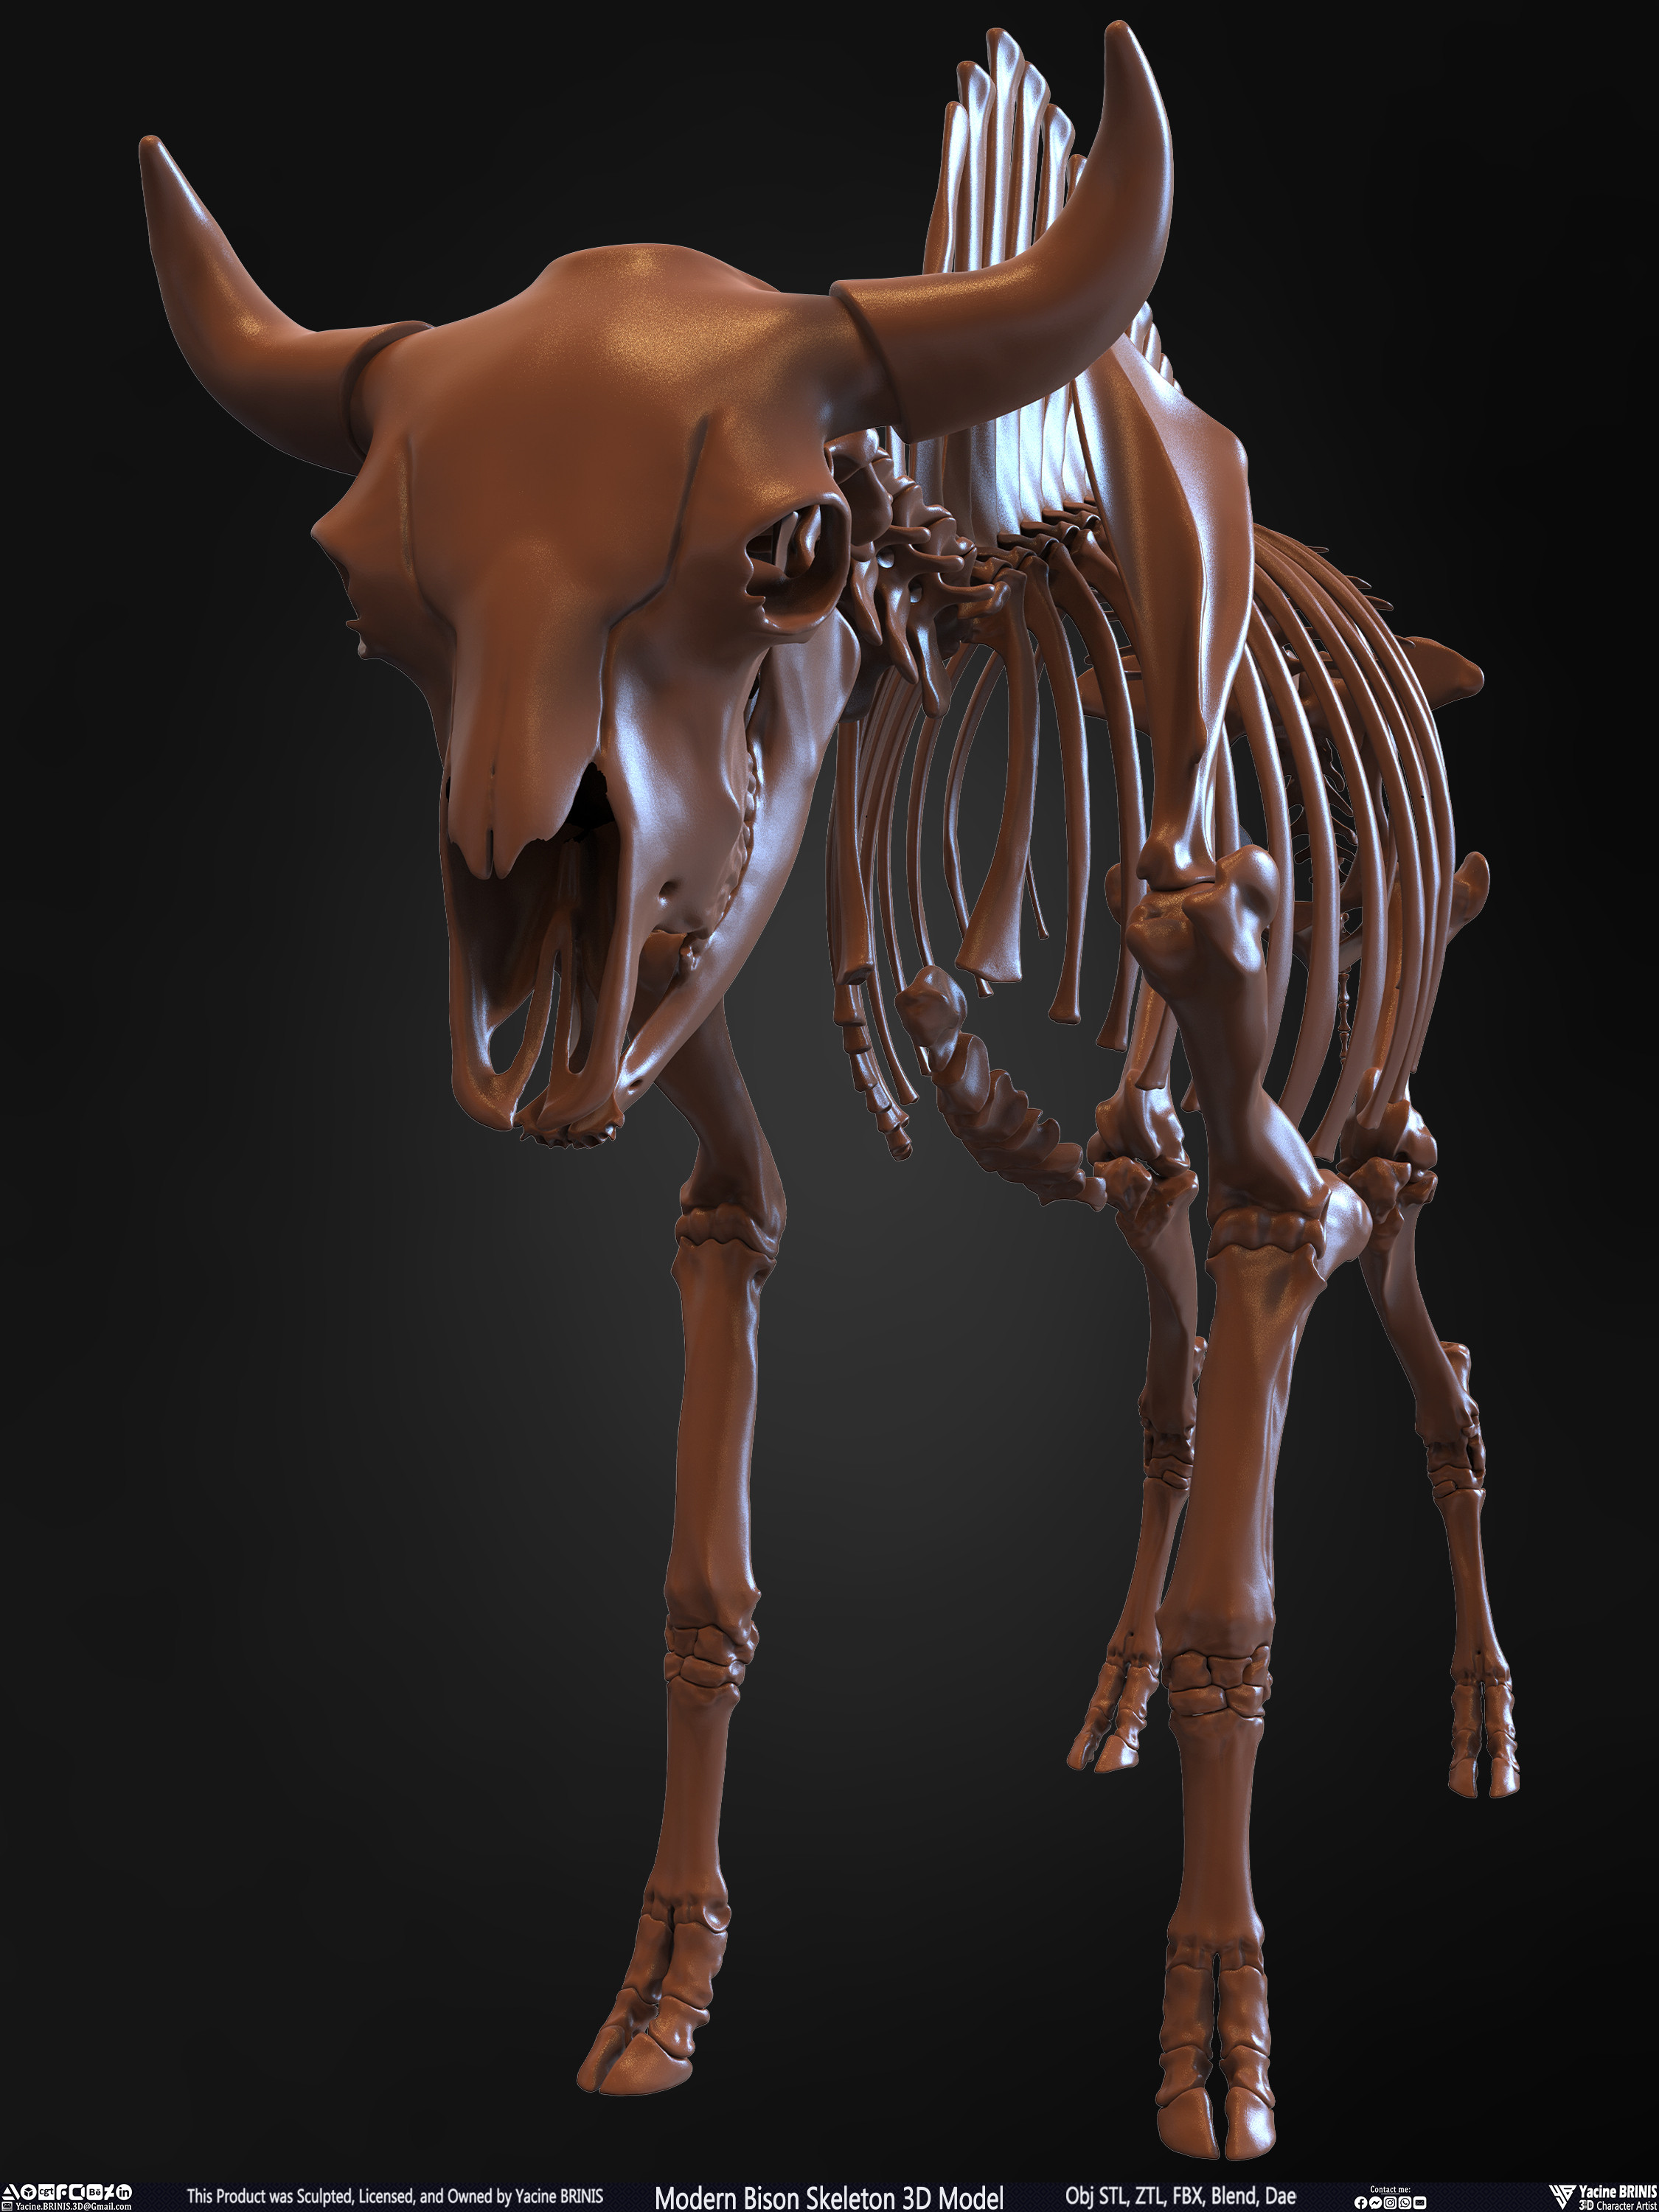 Modern Bison Skeleton 3D Model Sculpted by Yacine BRINIS Set 011